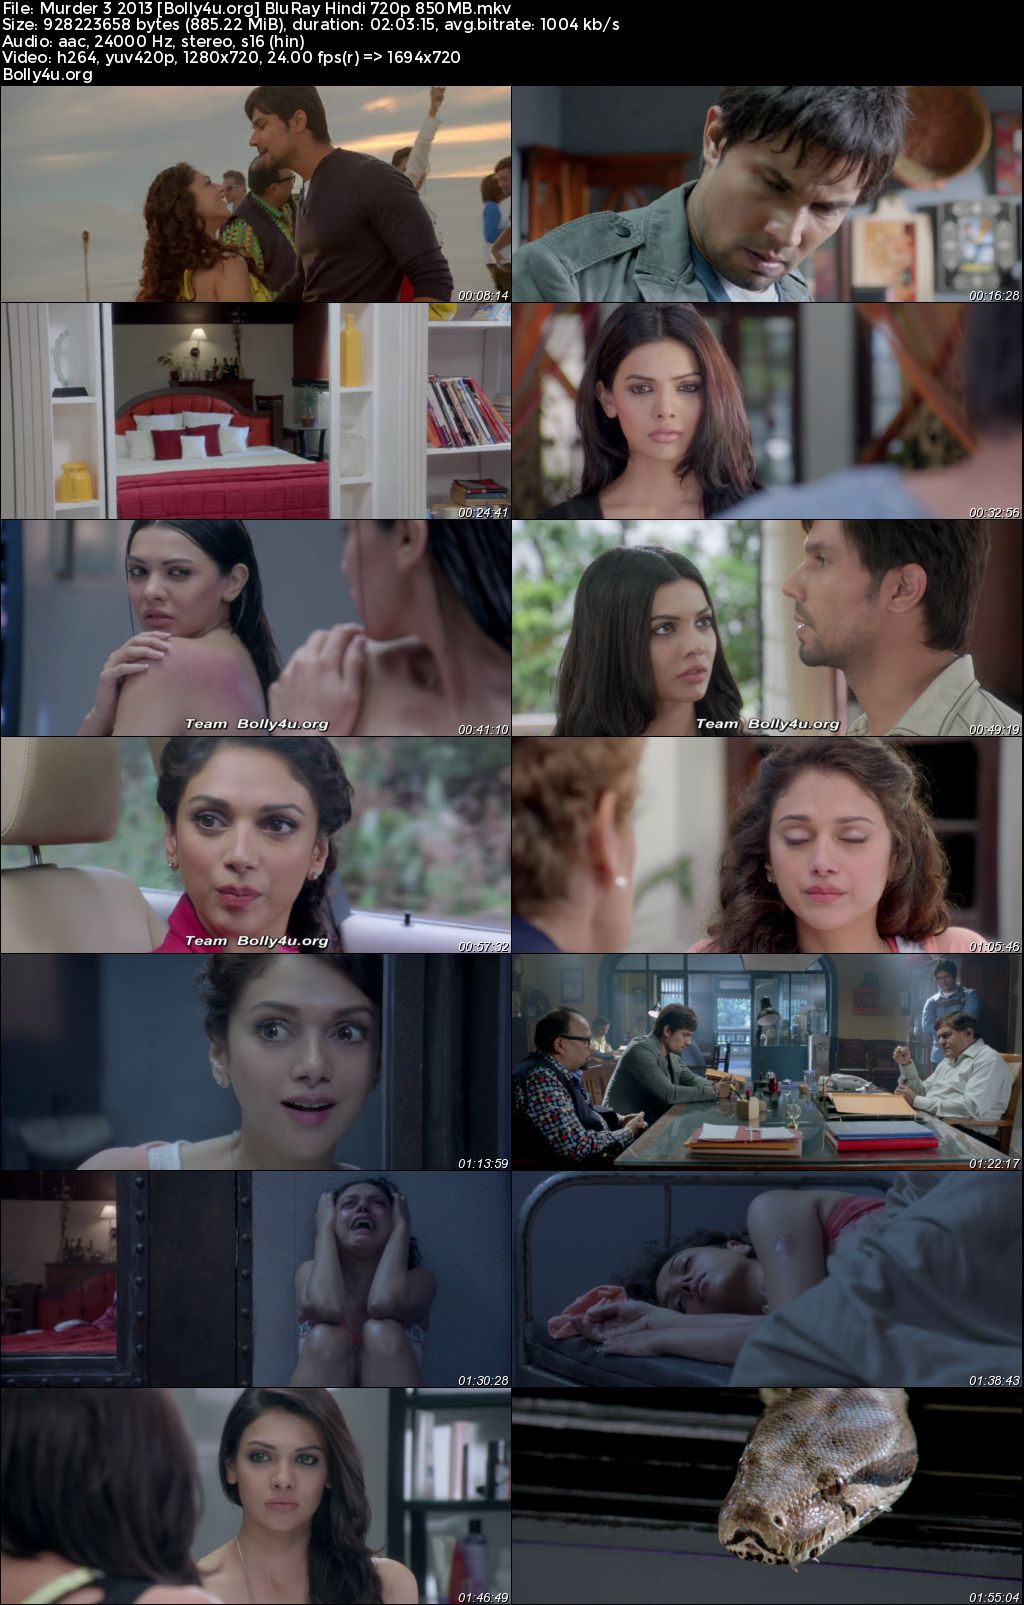 Murder 3 2013 BluRay Hindi Full Movie Download 1080p 720p 480p